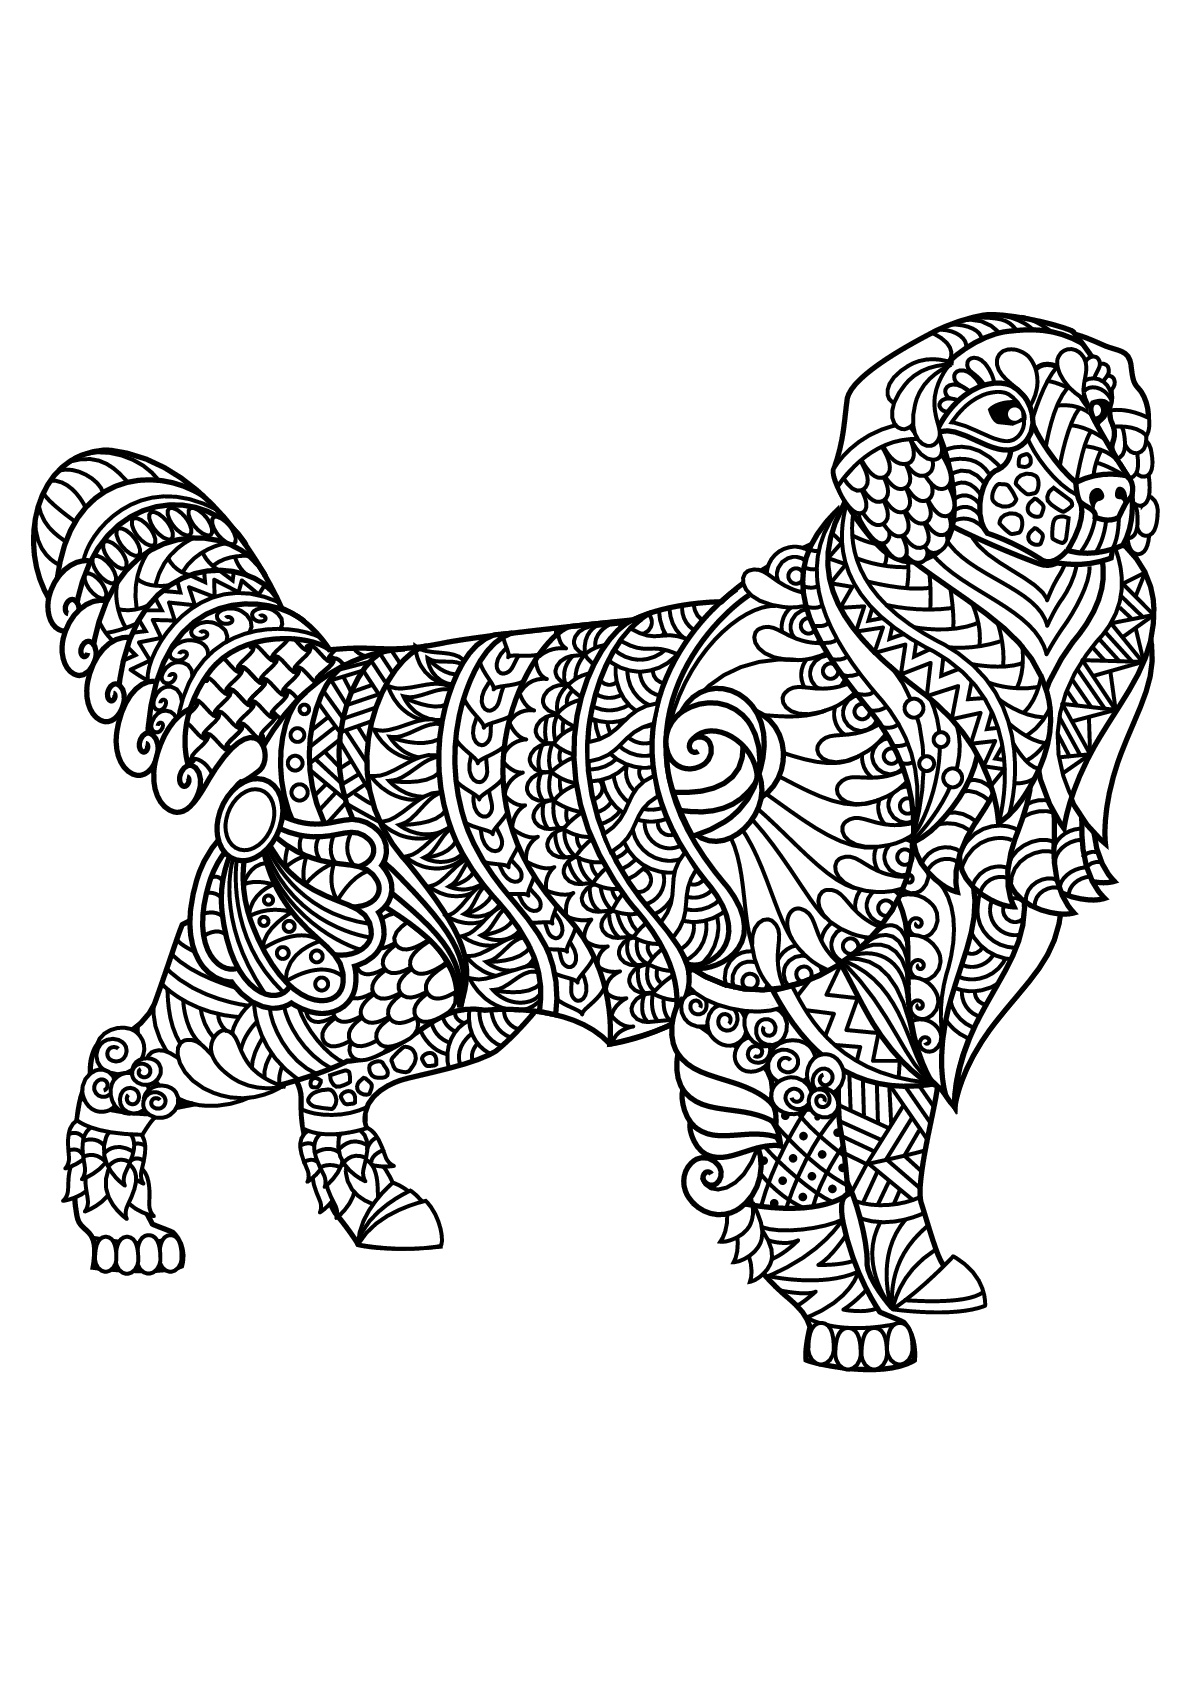 Labrador, avec motifs harmonieux et complexes